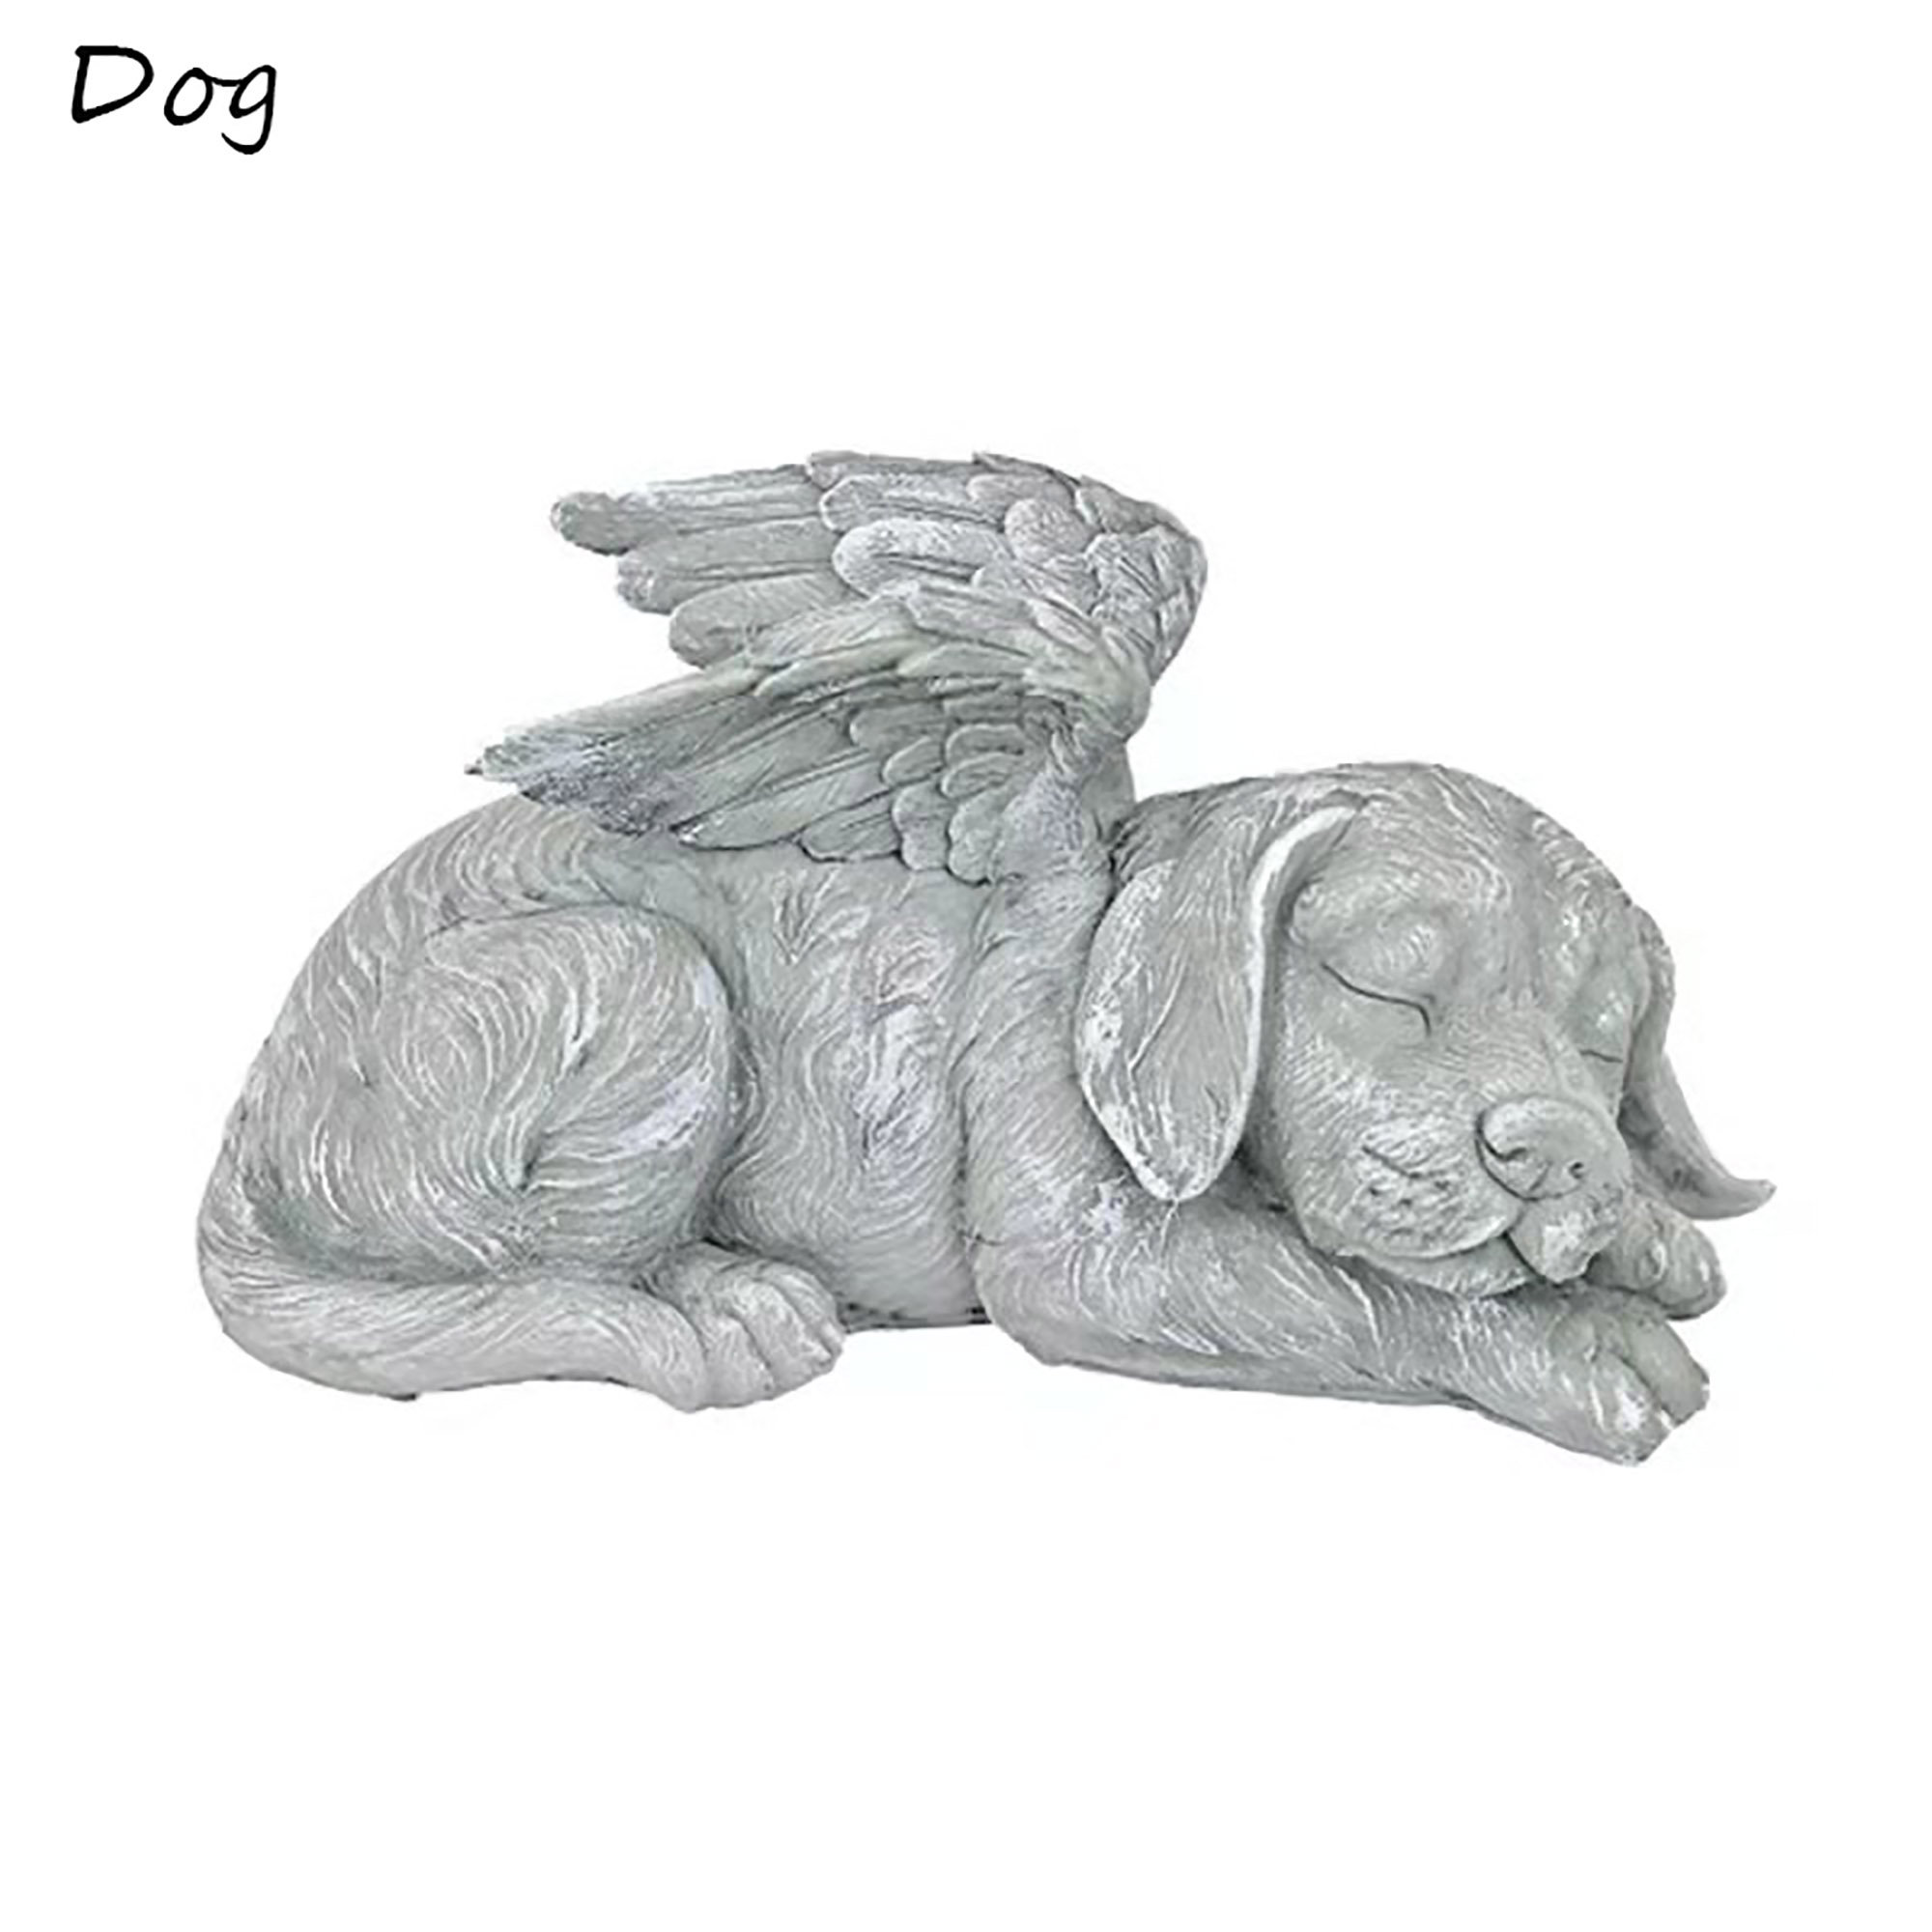 ❤ Garden Angel Dog Statue-EchoDecor